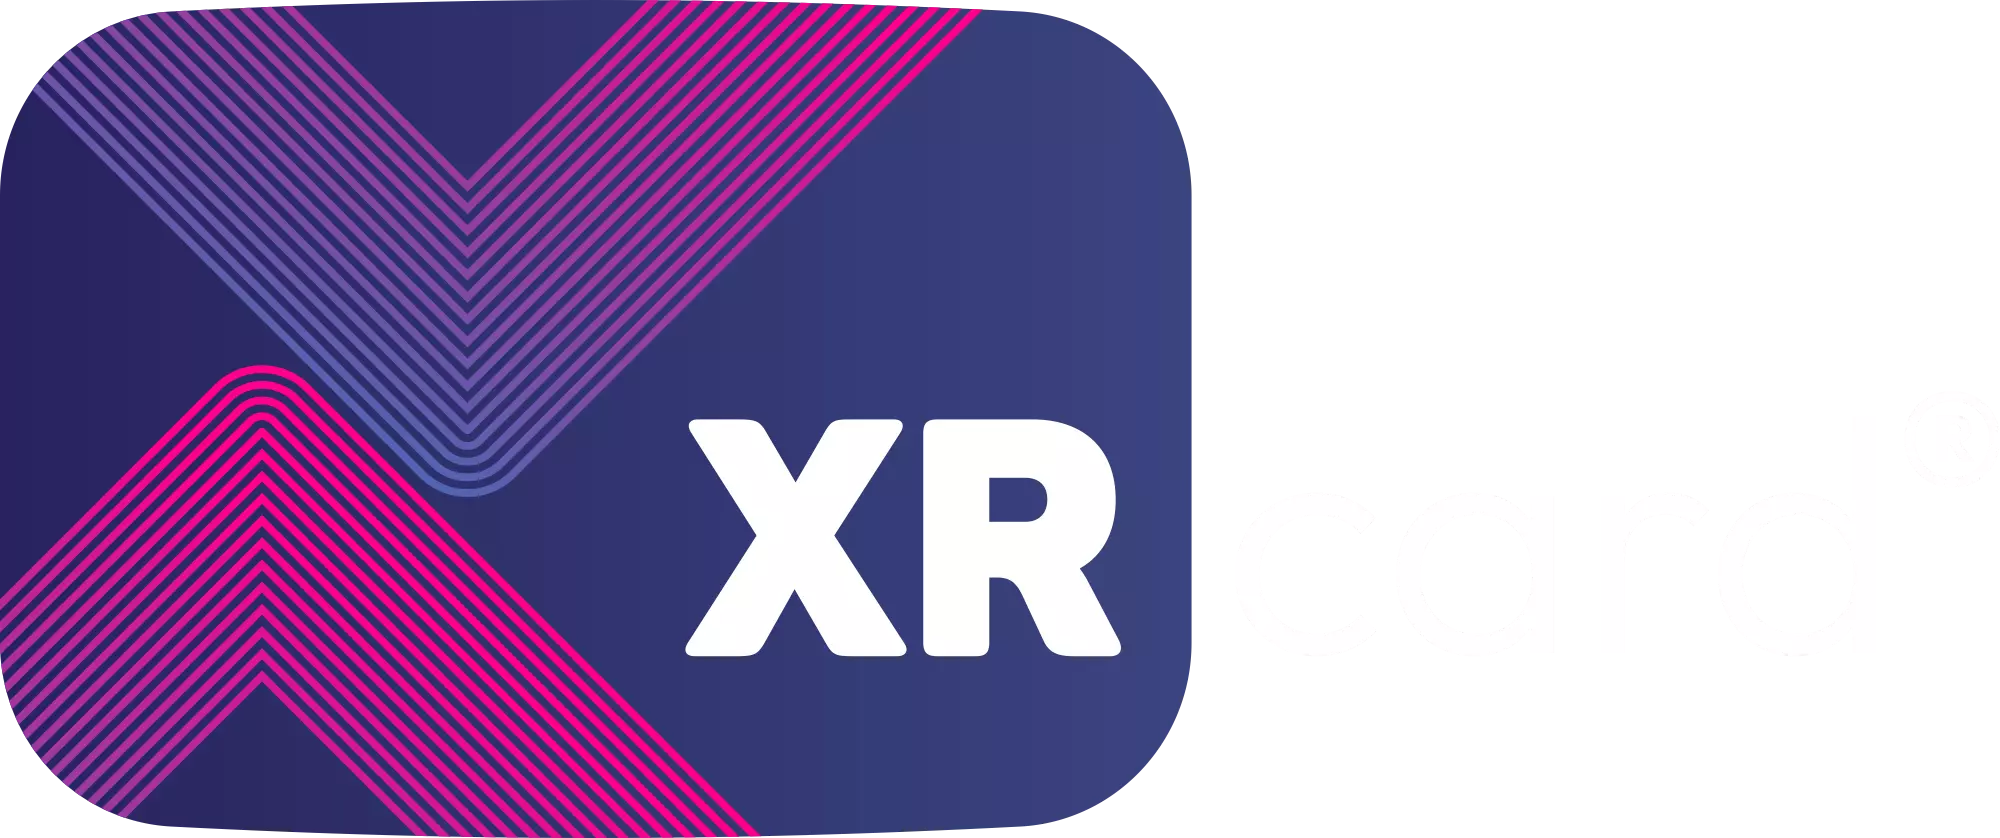 XR Card® - Rede de Vantagens e Multibenefícios. Economize nas compras diárias e conte com Assistências e Telemedicina SulAmérica.